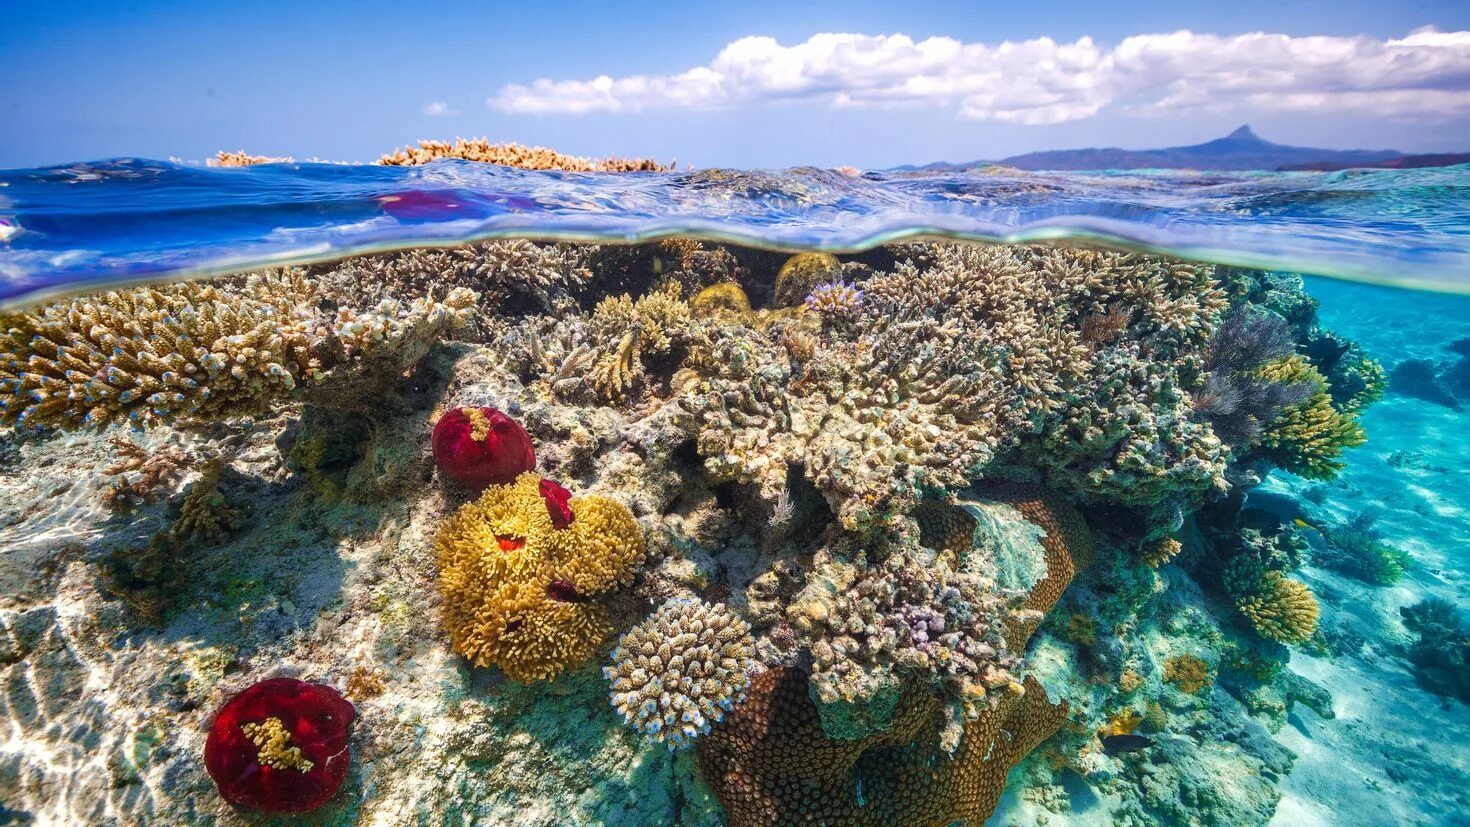 Коралловый риф 4. Остров риф (Reef Island). Коралловый Барьерный риф. Коралловые рифы Тихого океана. Остров Занзибар коралловые рифы.